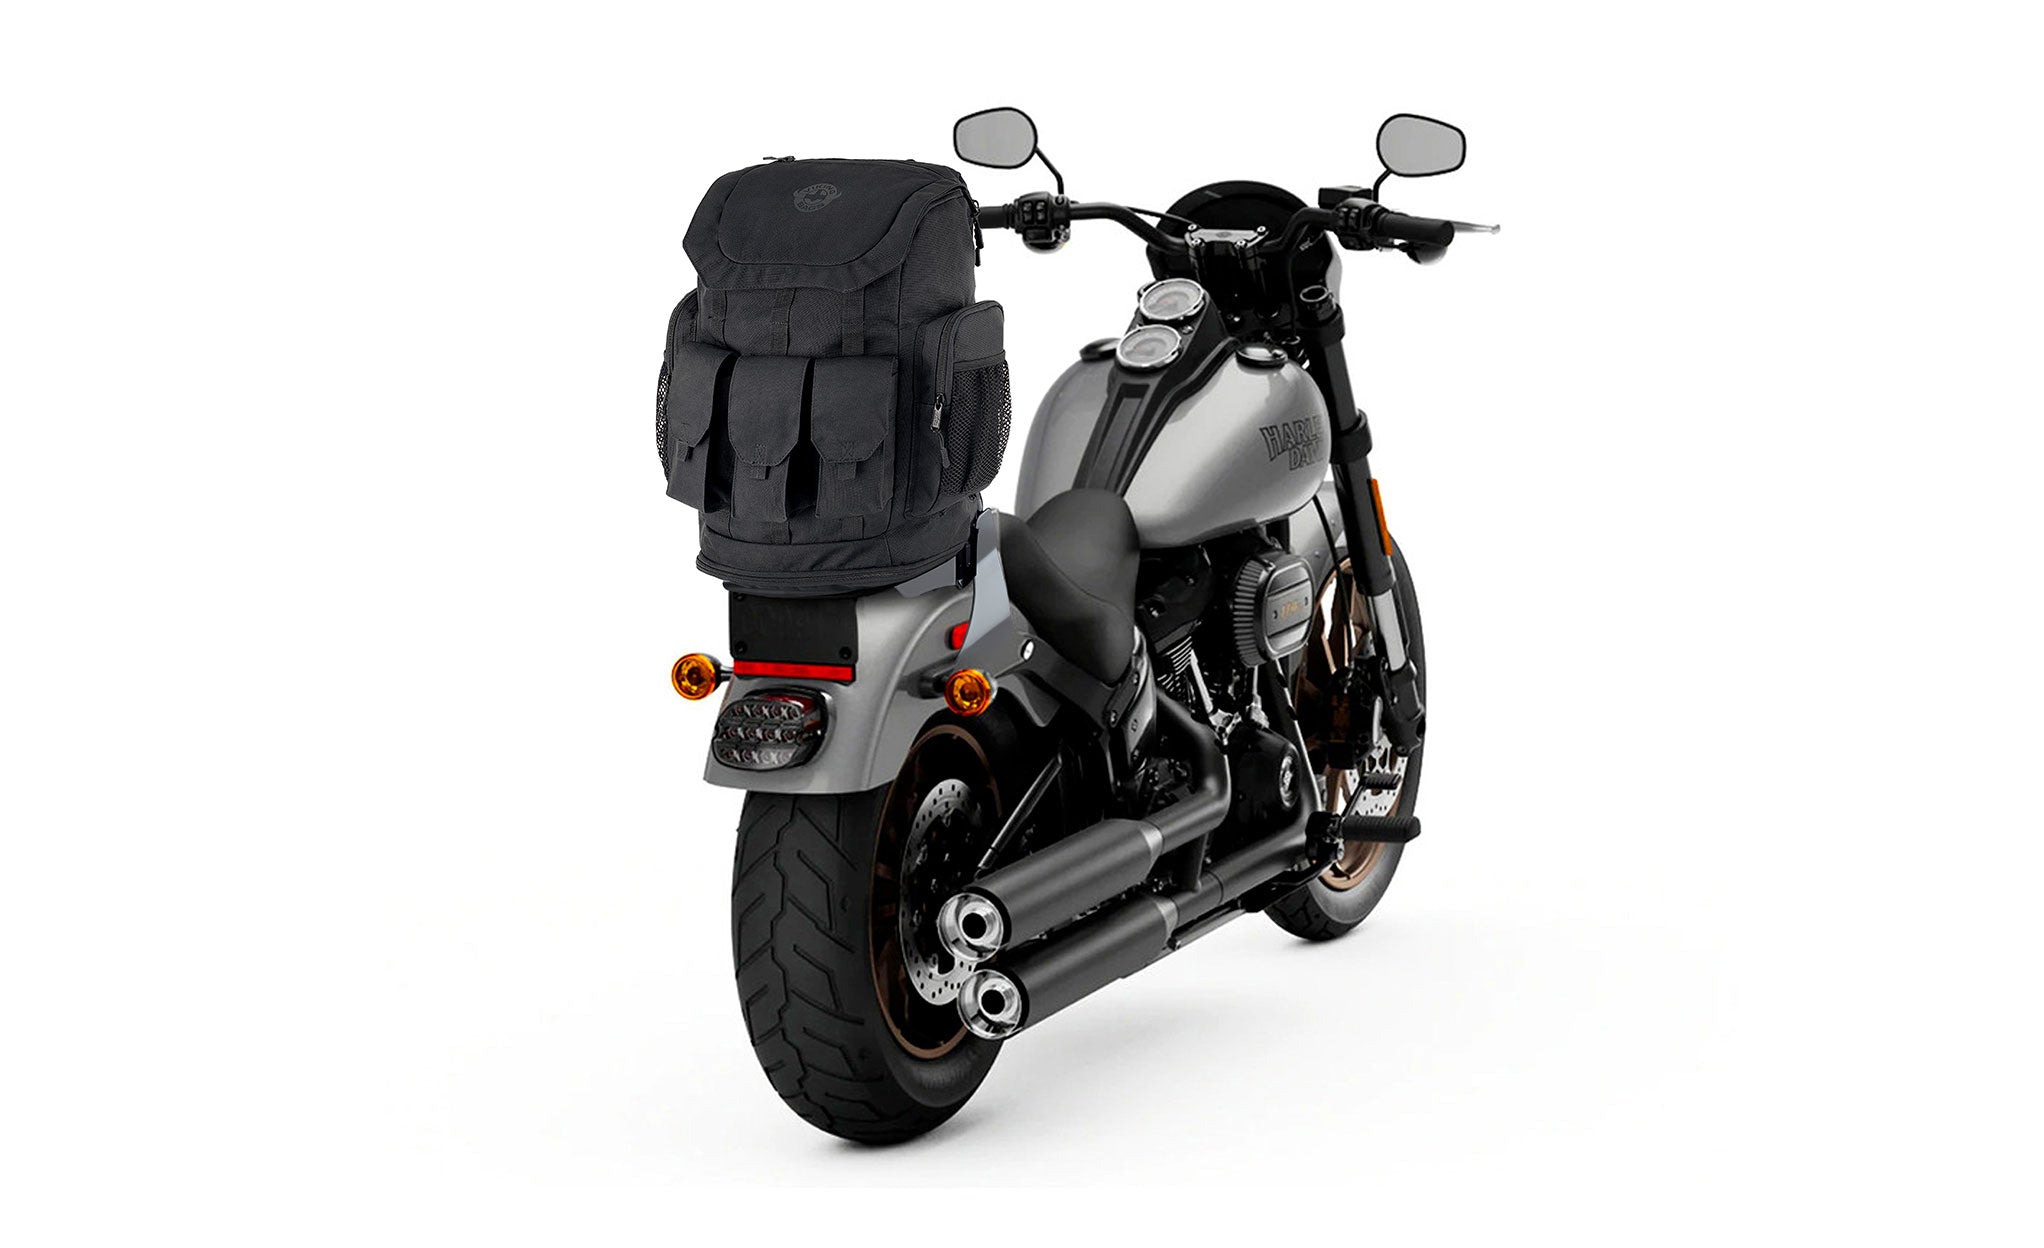 Viking Trident XL Suzuki Motorcycle Tail Bag Bag on Bike View @expand